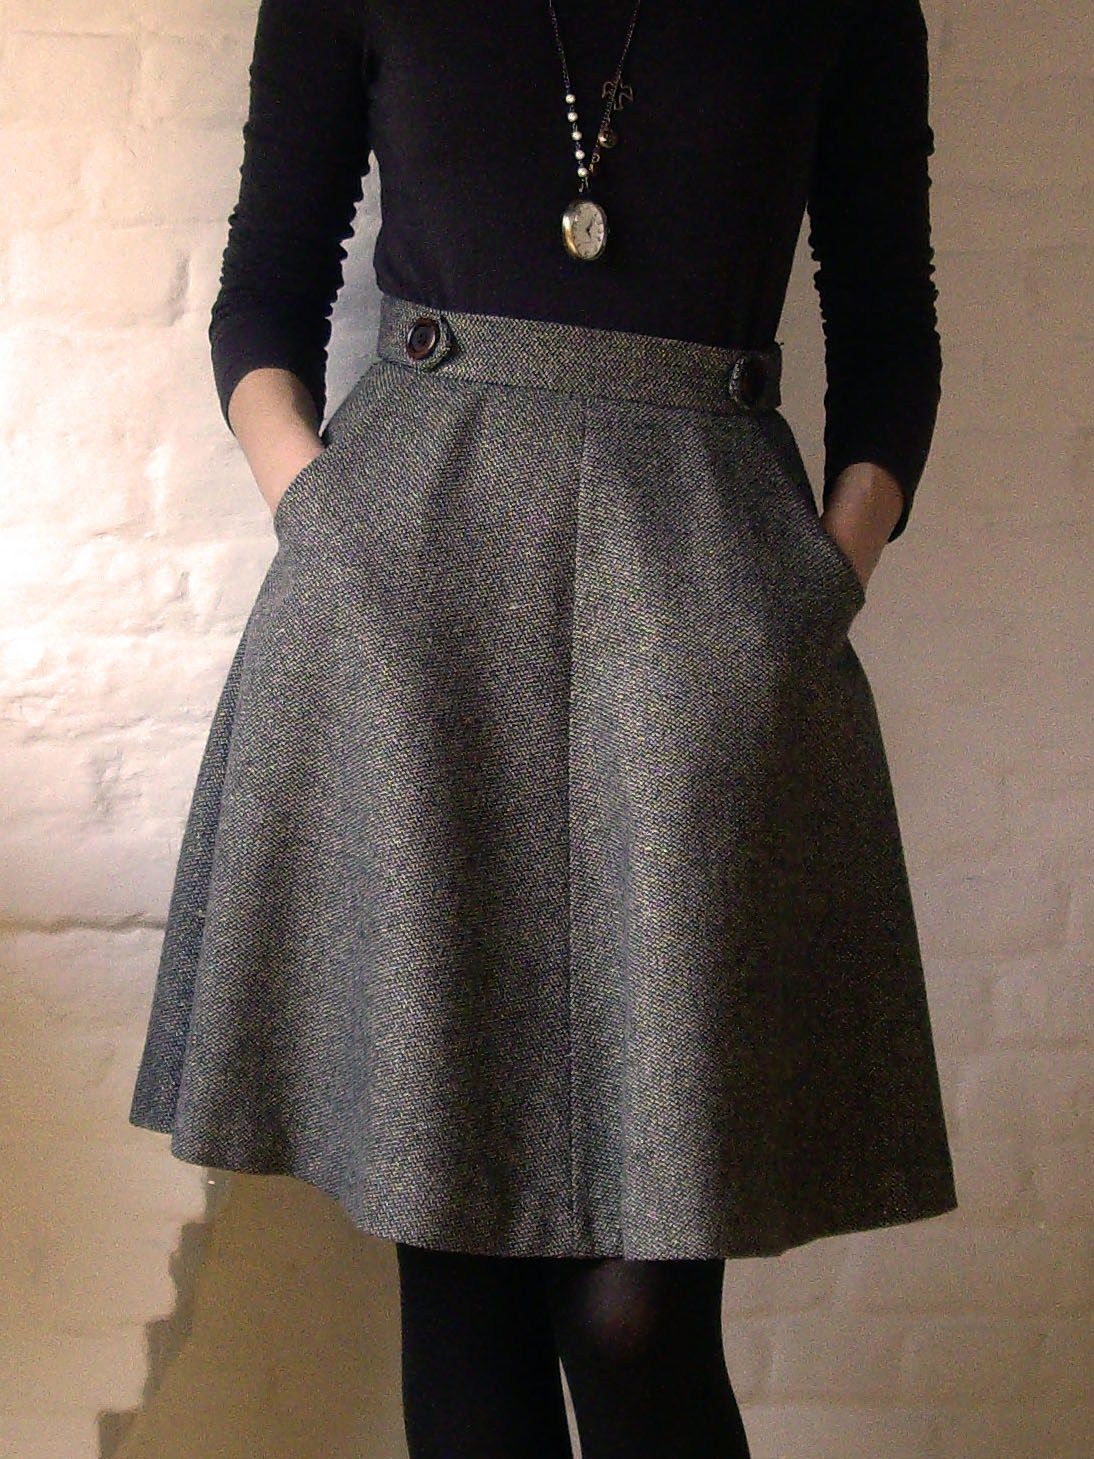 Hollyburn kjolmönster: hög midjad a-linje knälång kjol, klassisk men lätt att anpassa